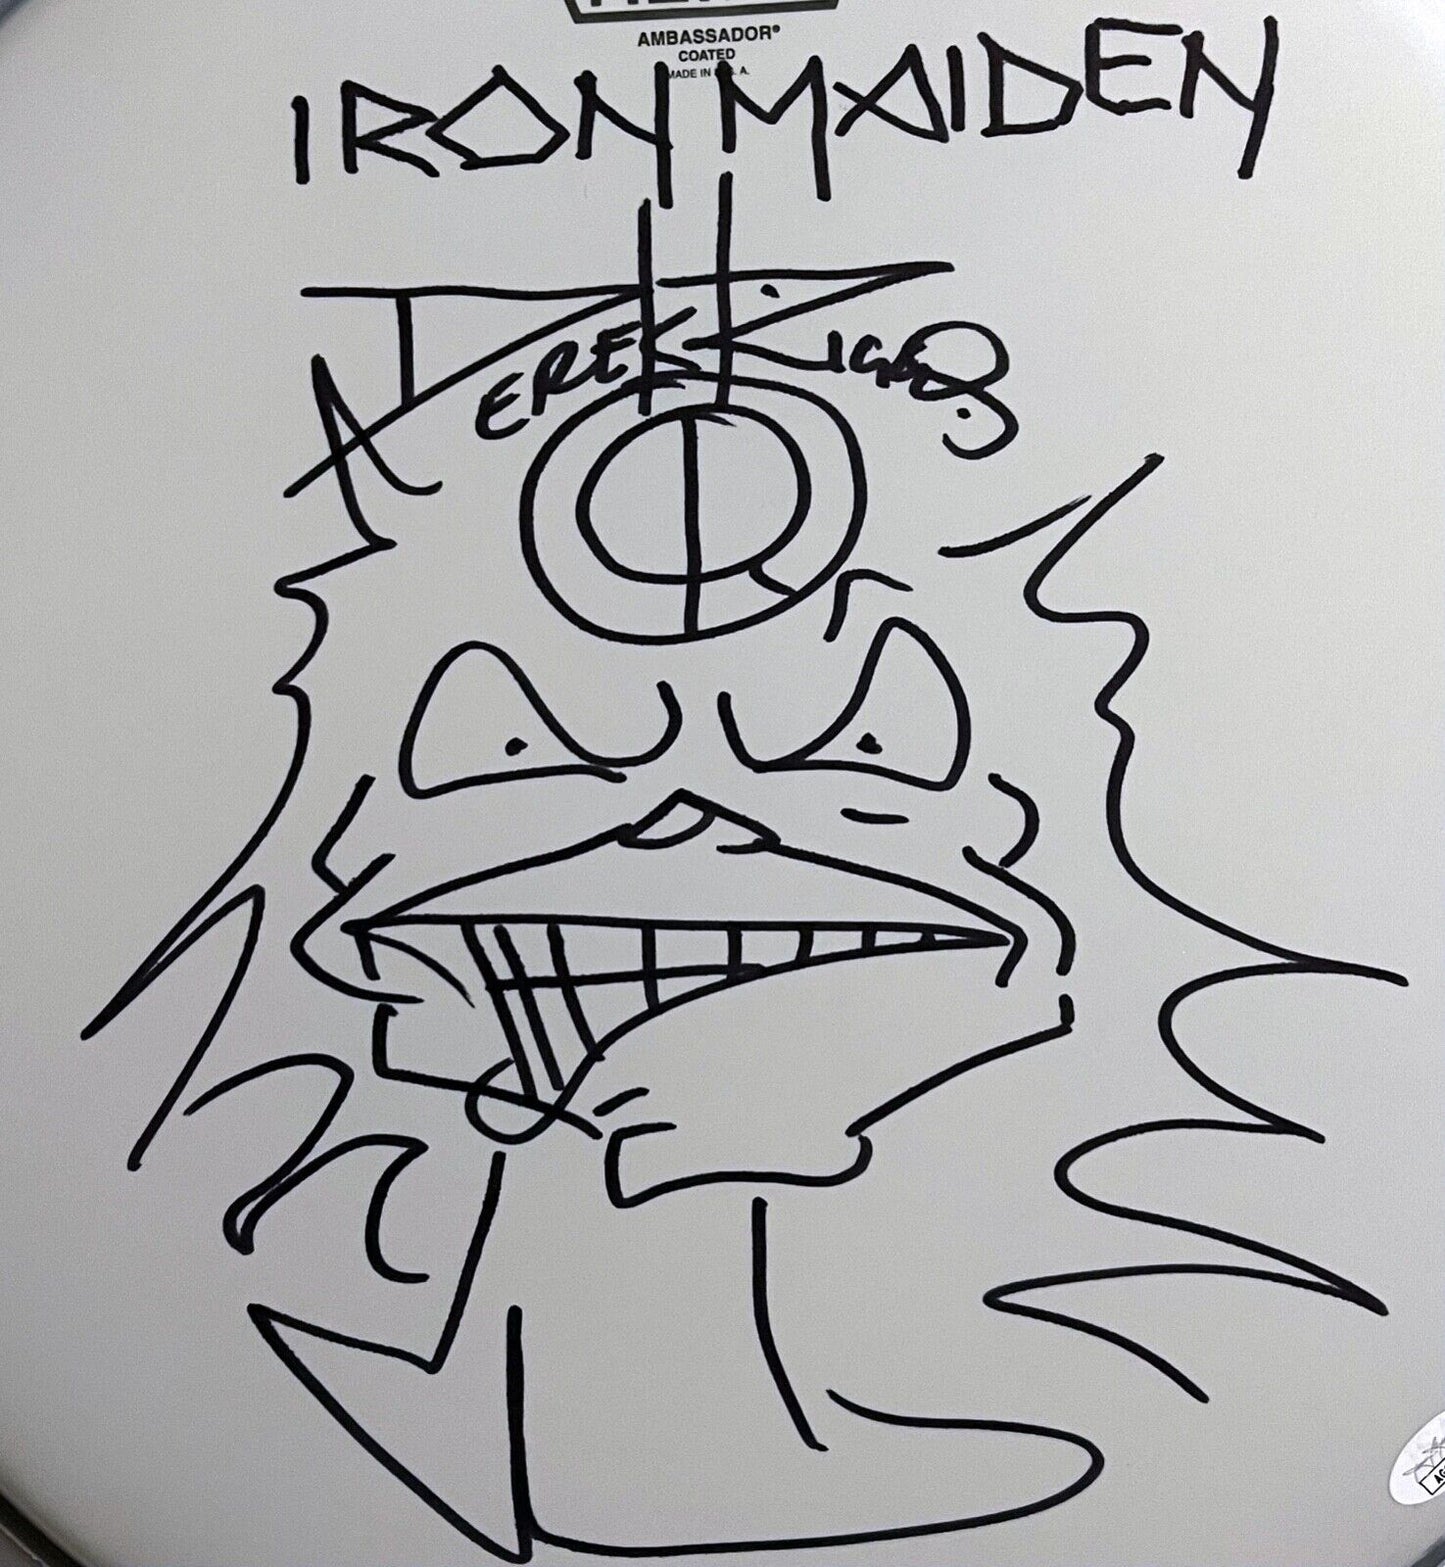 Iron Maiden Derek Riggs JSA Autograph Signed 16" Drum Head Original Sketch Eddie